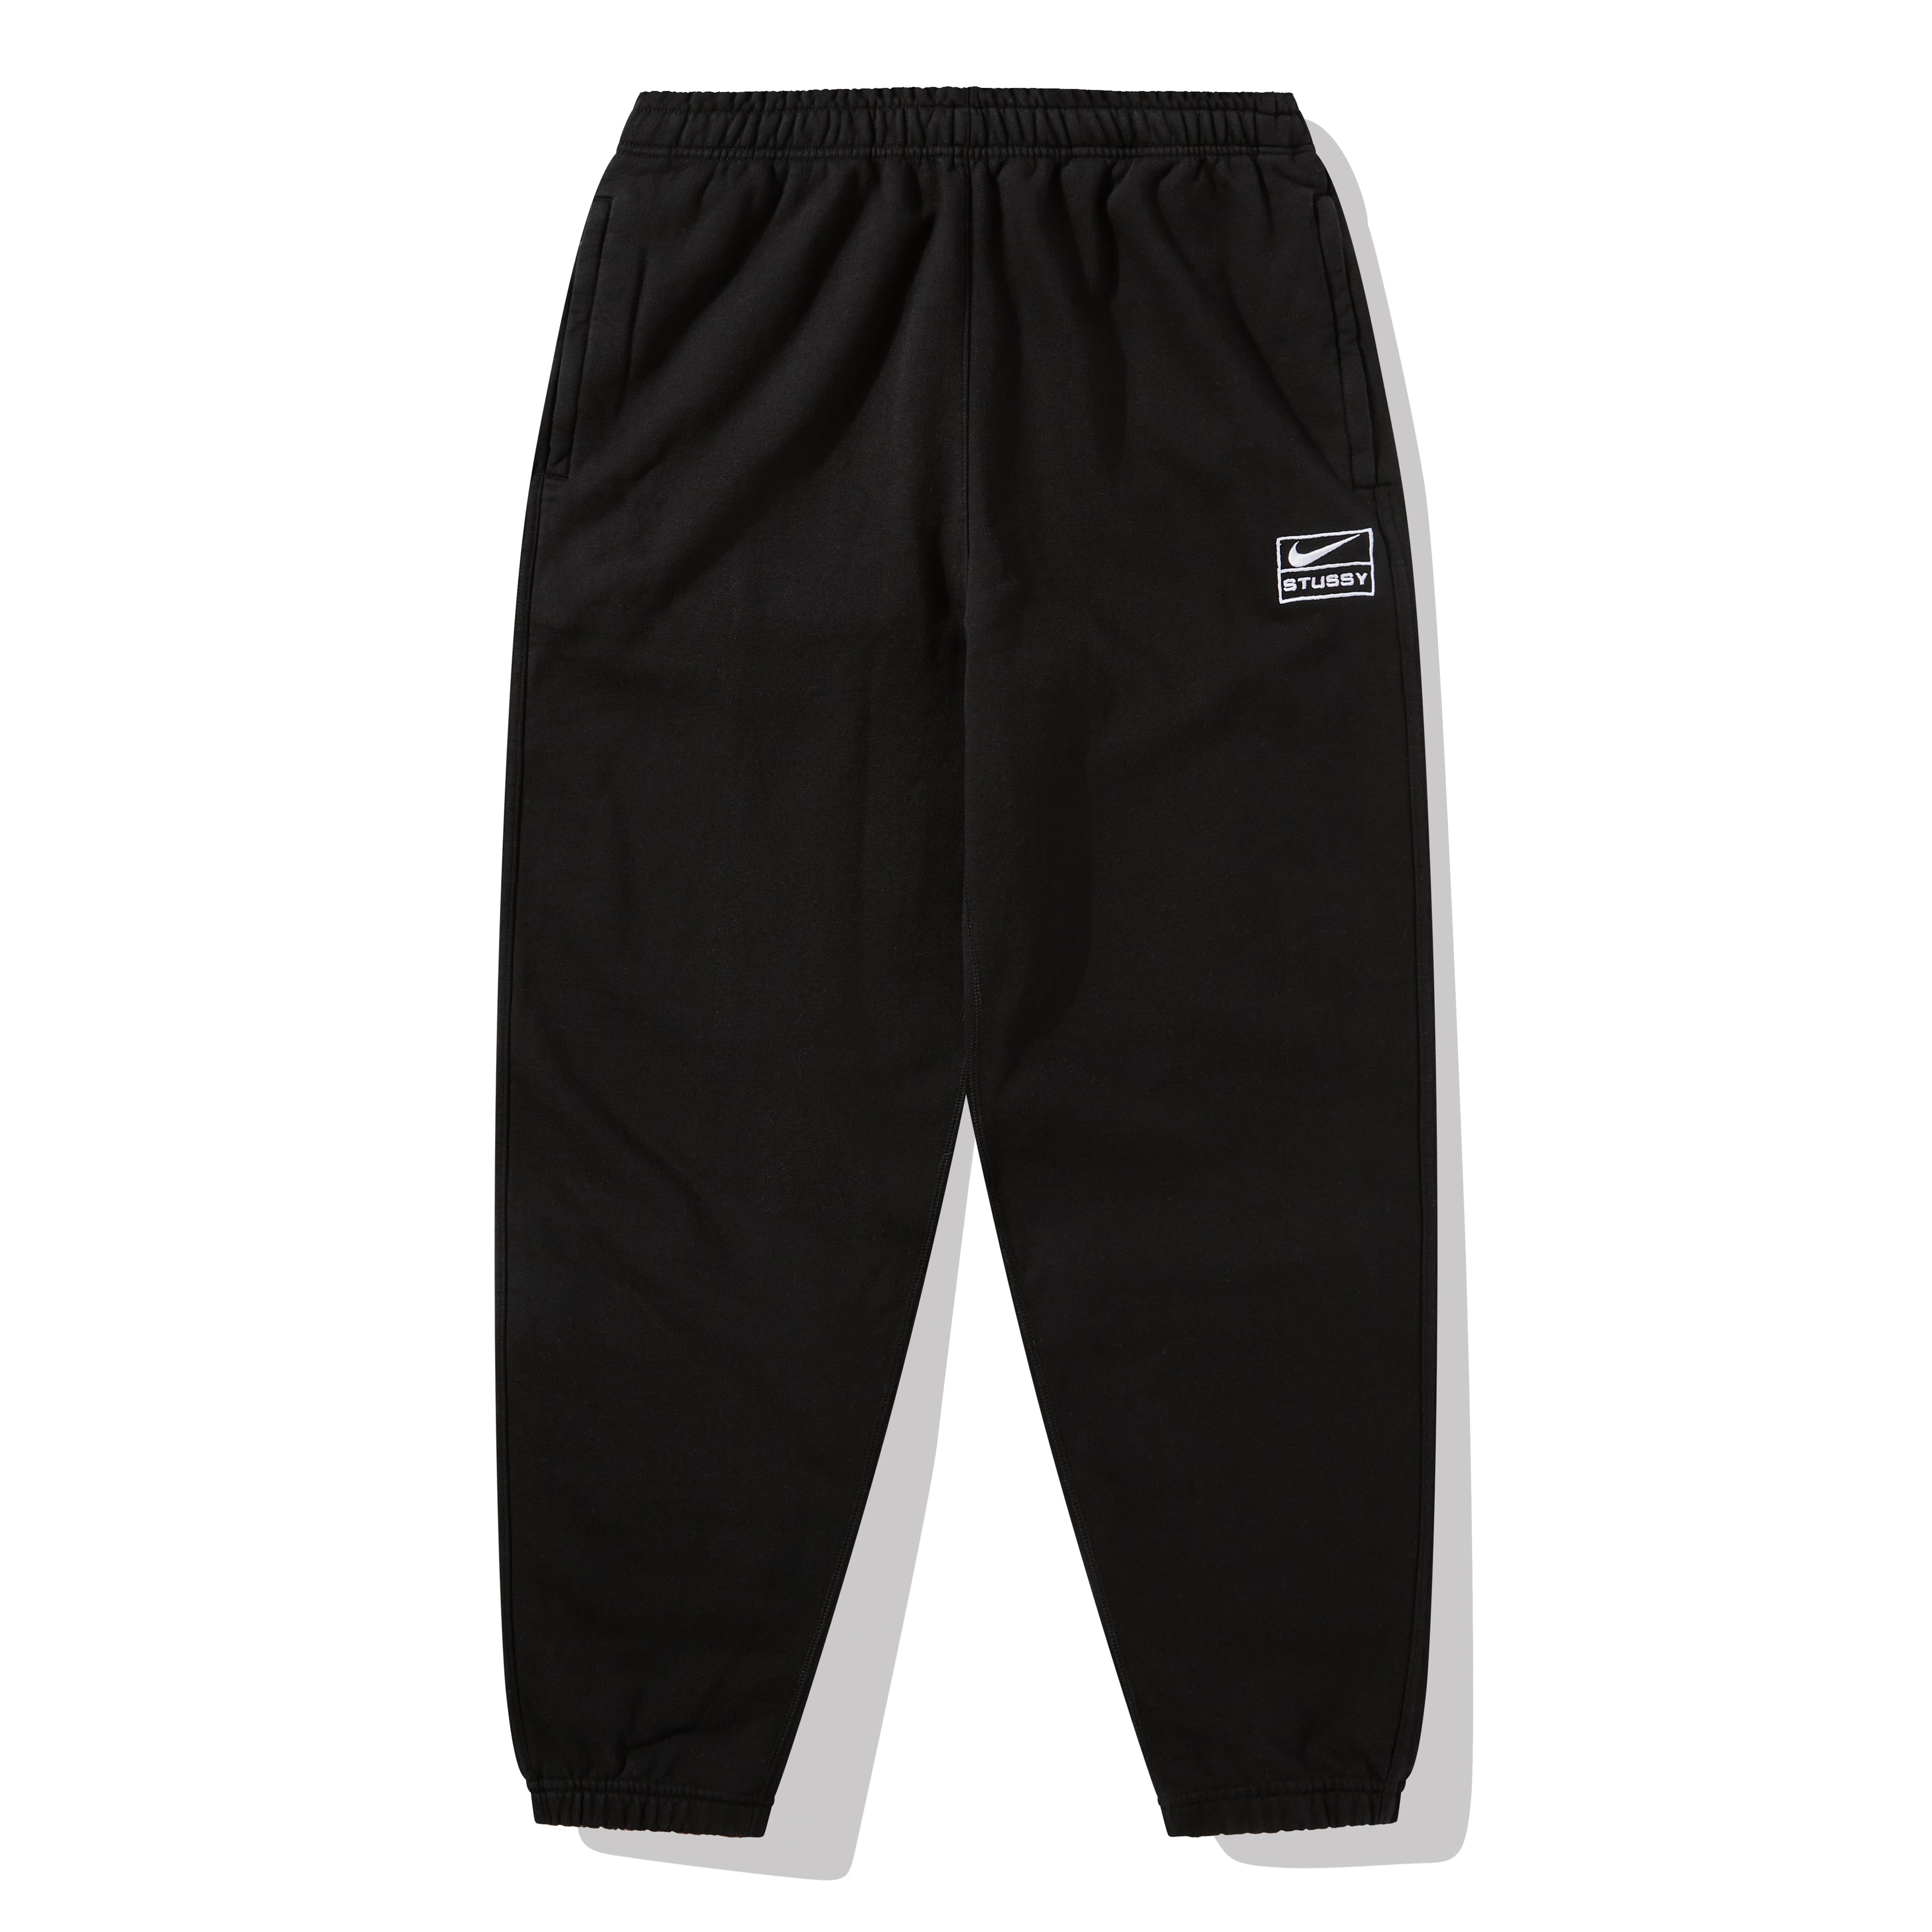 Nike - Dover Street Market Men's Fleece Sweatpants - (Dark Grey)